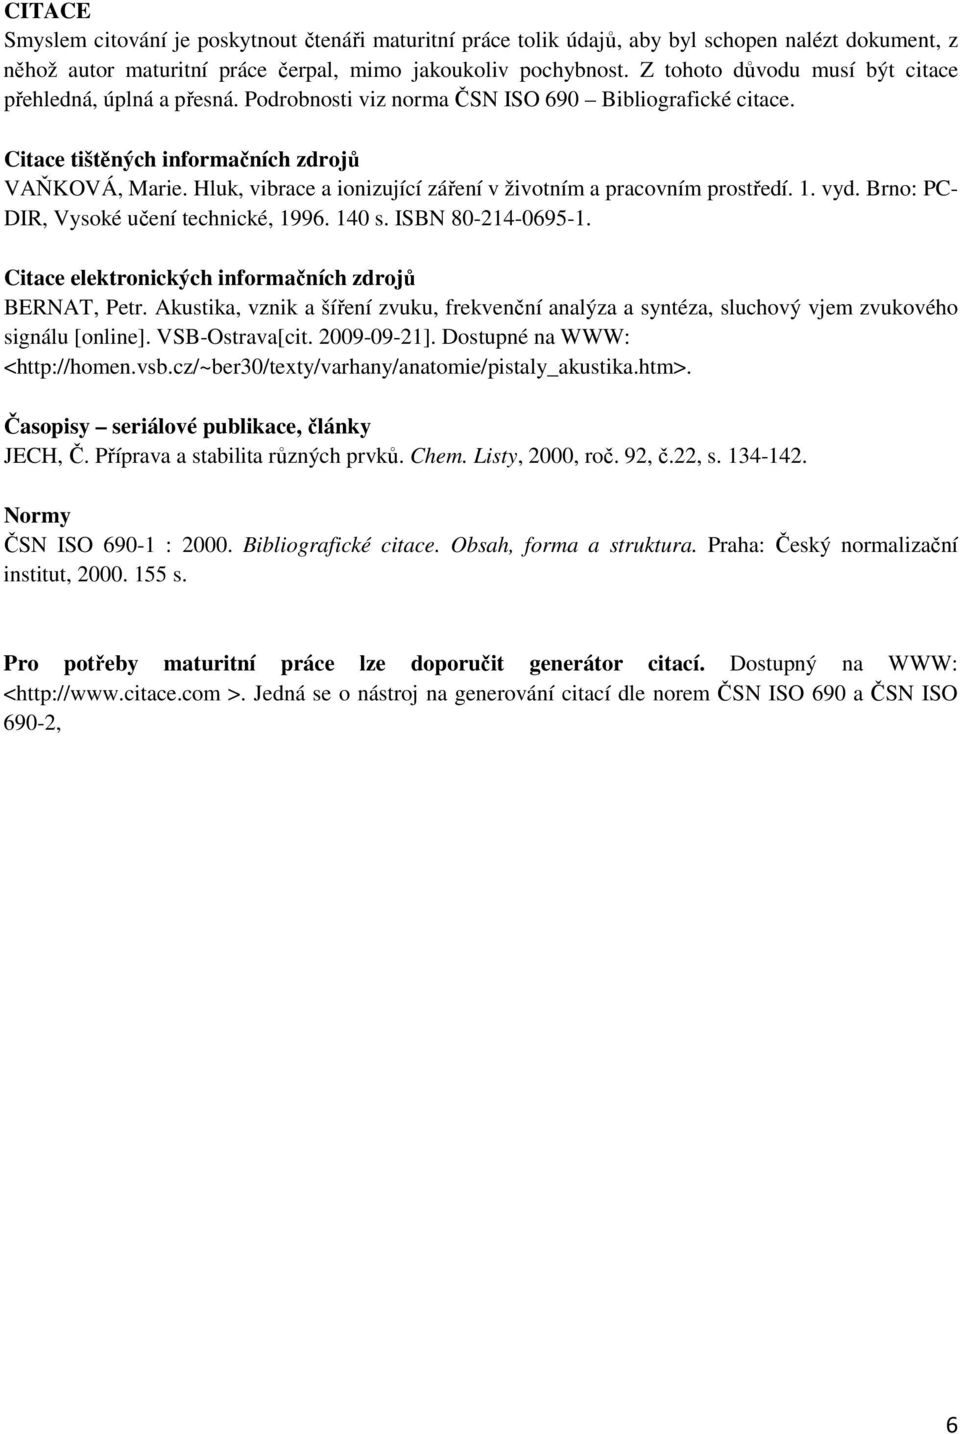 Hluk, vibrace a ionizující záření v životním a pracovním prostředí. 1. vyd. Brno: PC- DIR, Vysoké učení technické, 1996. 140 s. ISBN 80-214-0695-1.